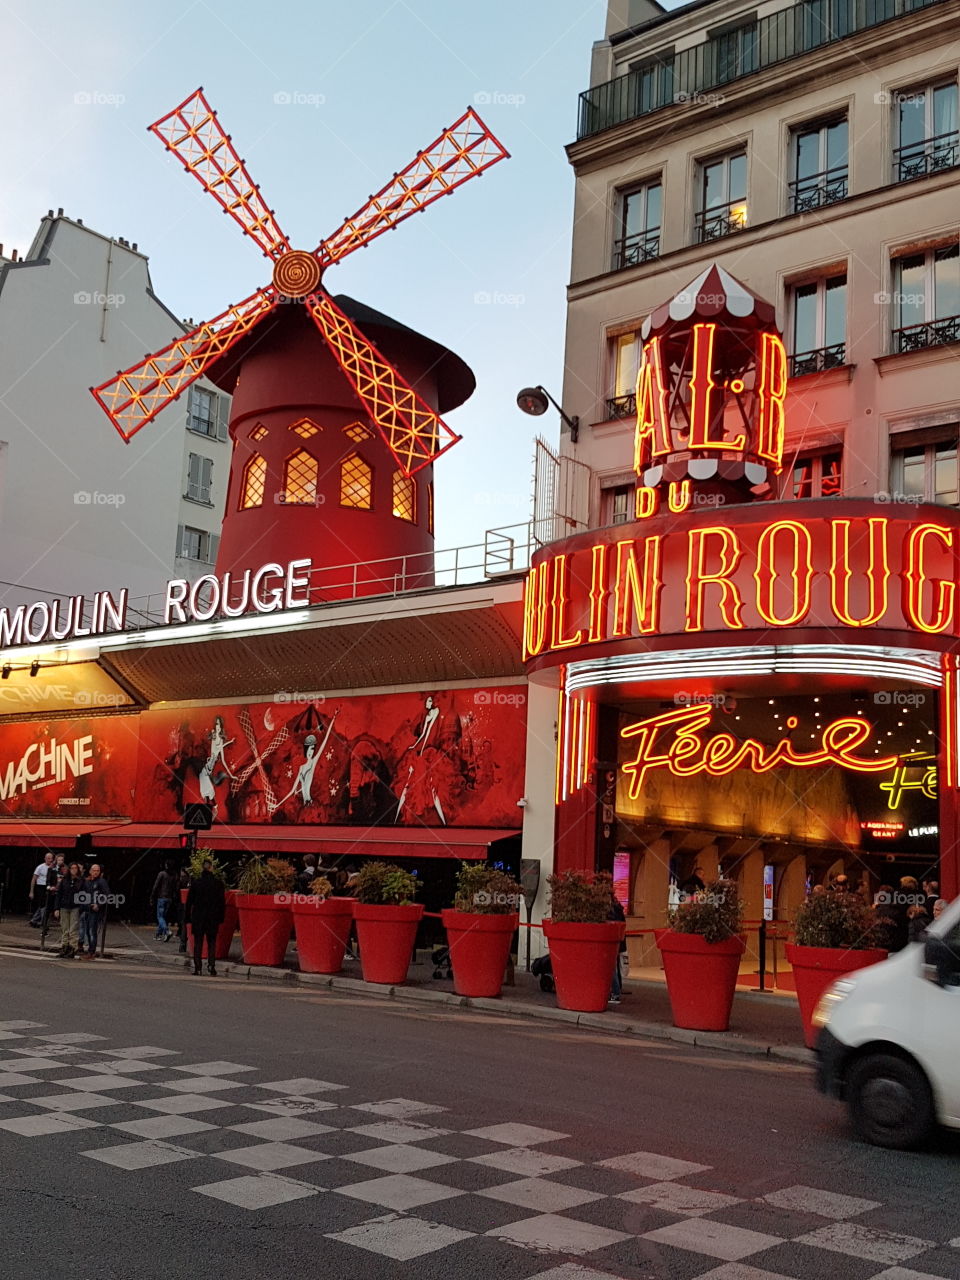 moulin rouge Paris France